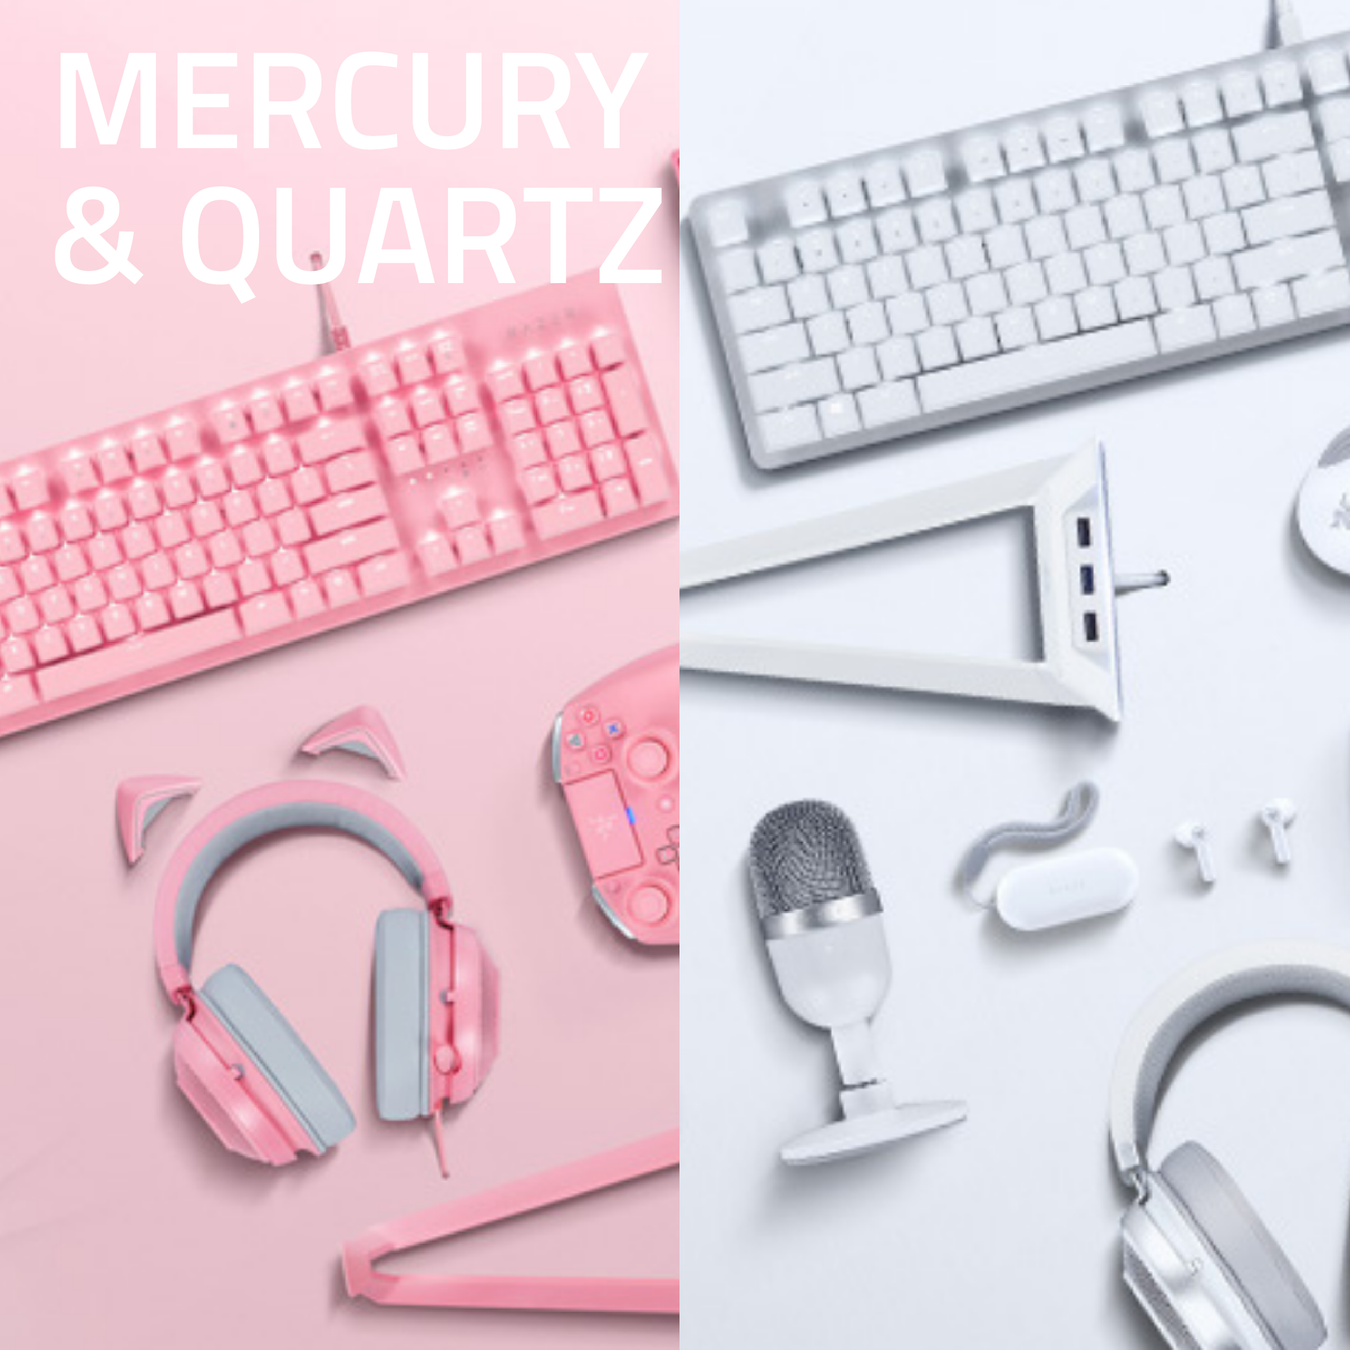 Mercury & Quartz Collection